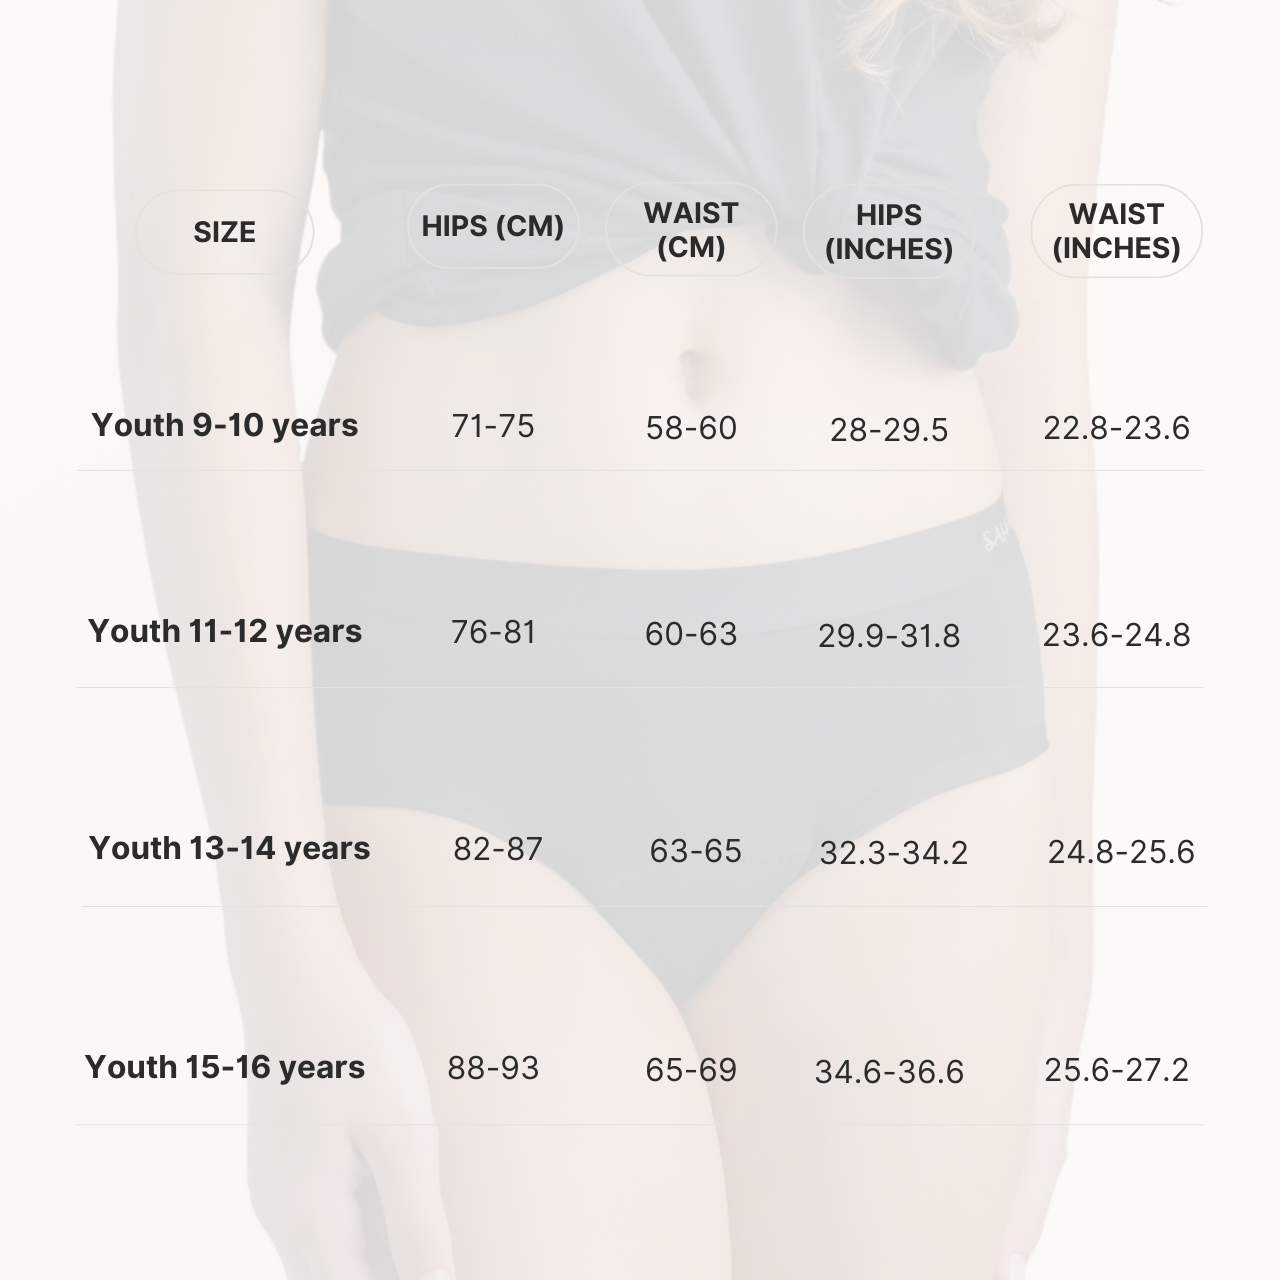 ملابس داخلية مقاومة للدورة الشهرية من صحارى للمراهقين، قدرة متوسطة على الامتصاص - للأعمار من 9 إلى 10 سنوات